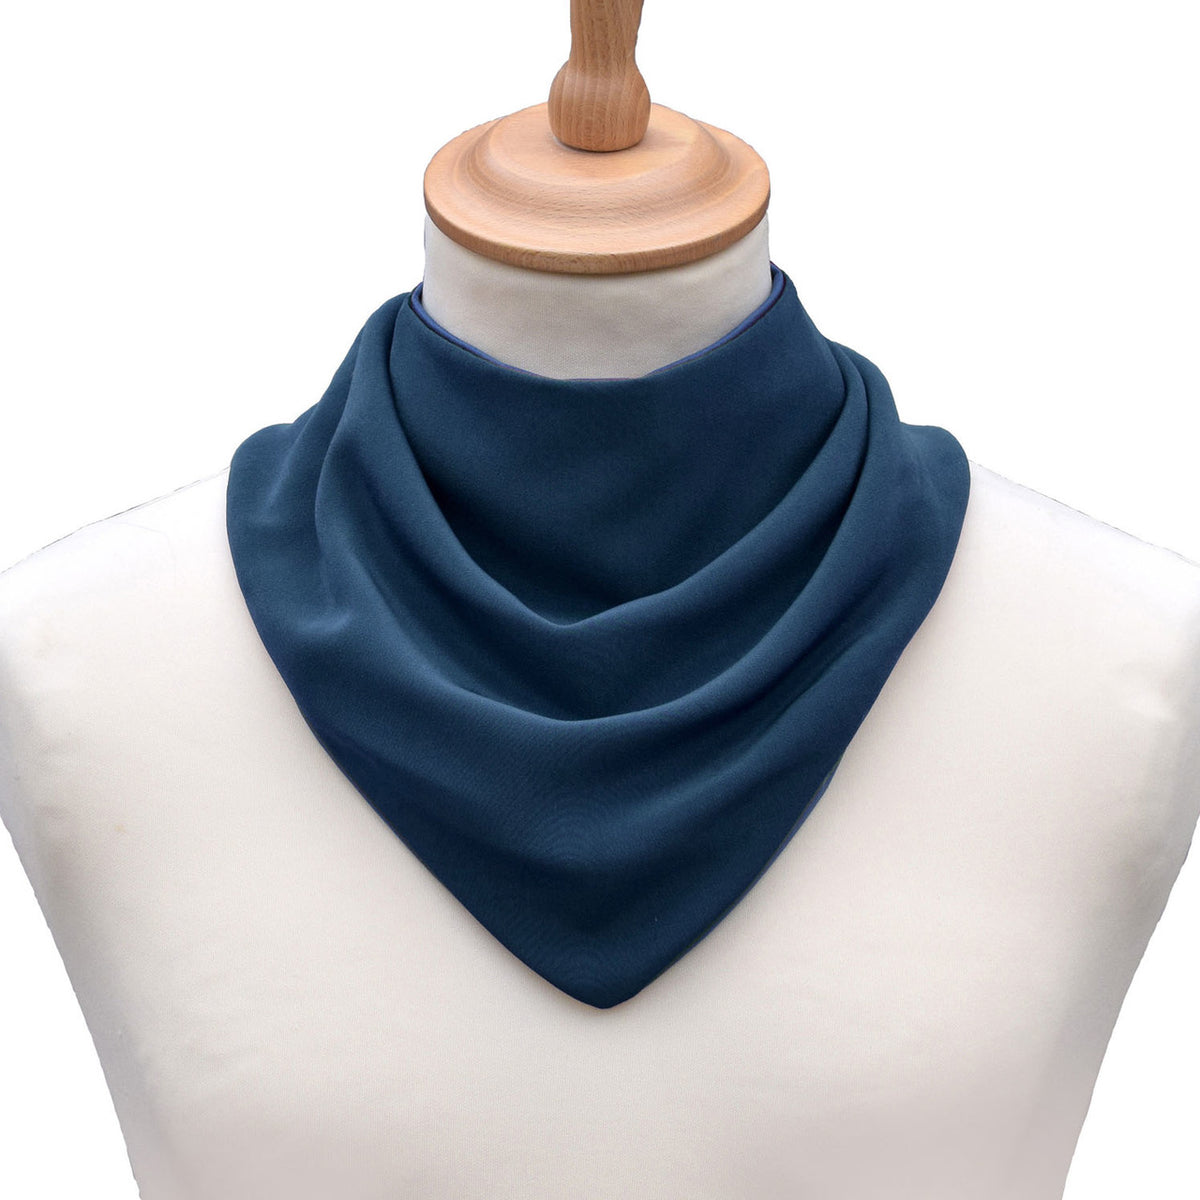 Neckerchief style dribble bib - Steel Blue | Health Care | Care Designs